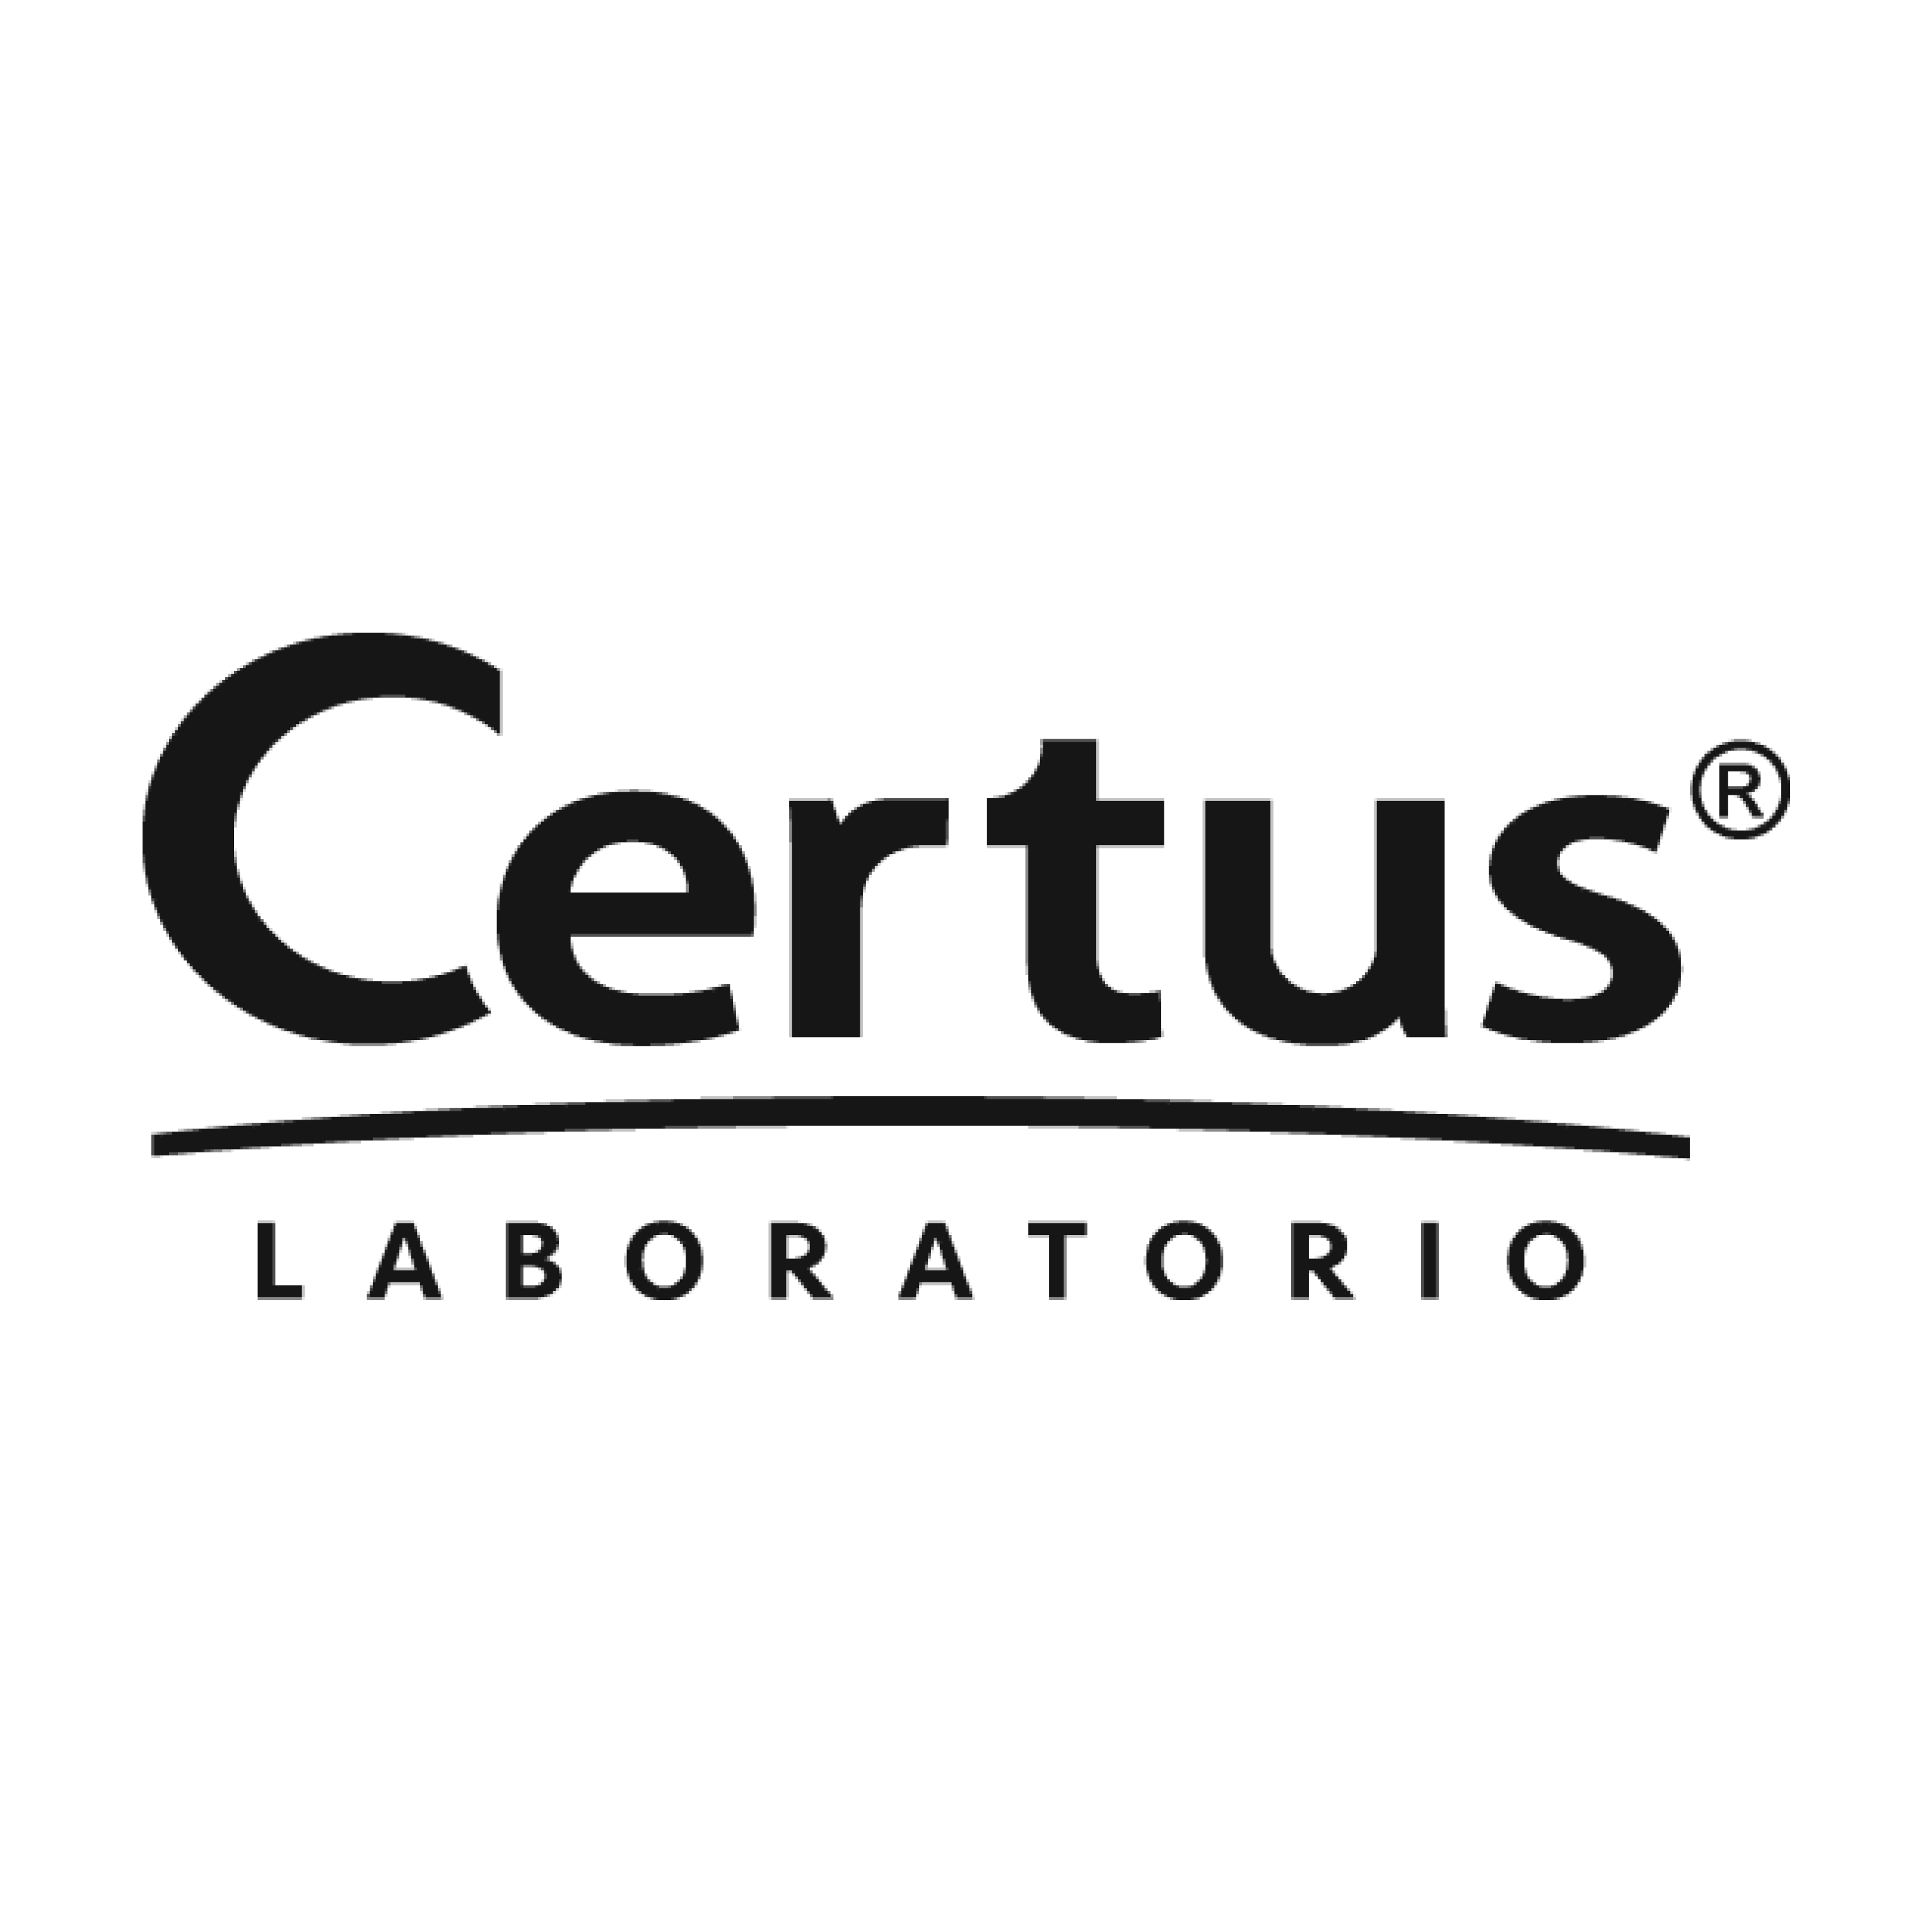 Certus Lab